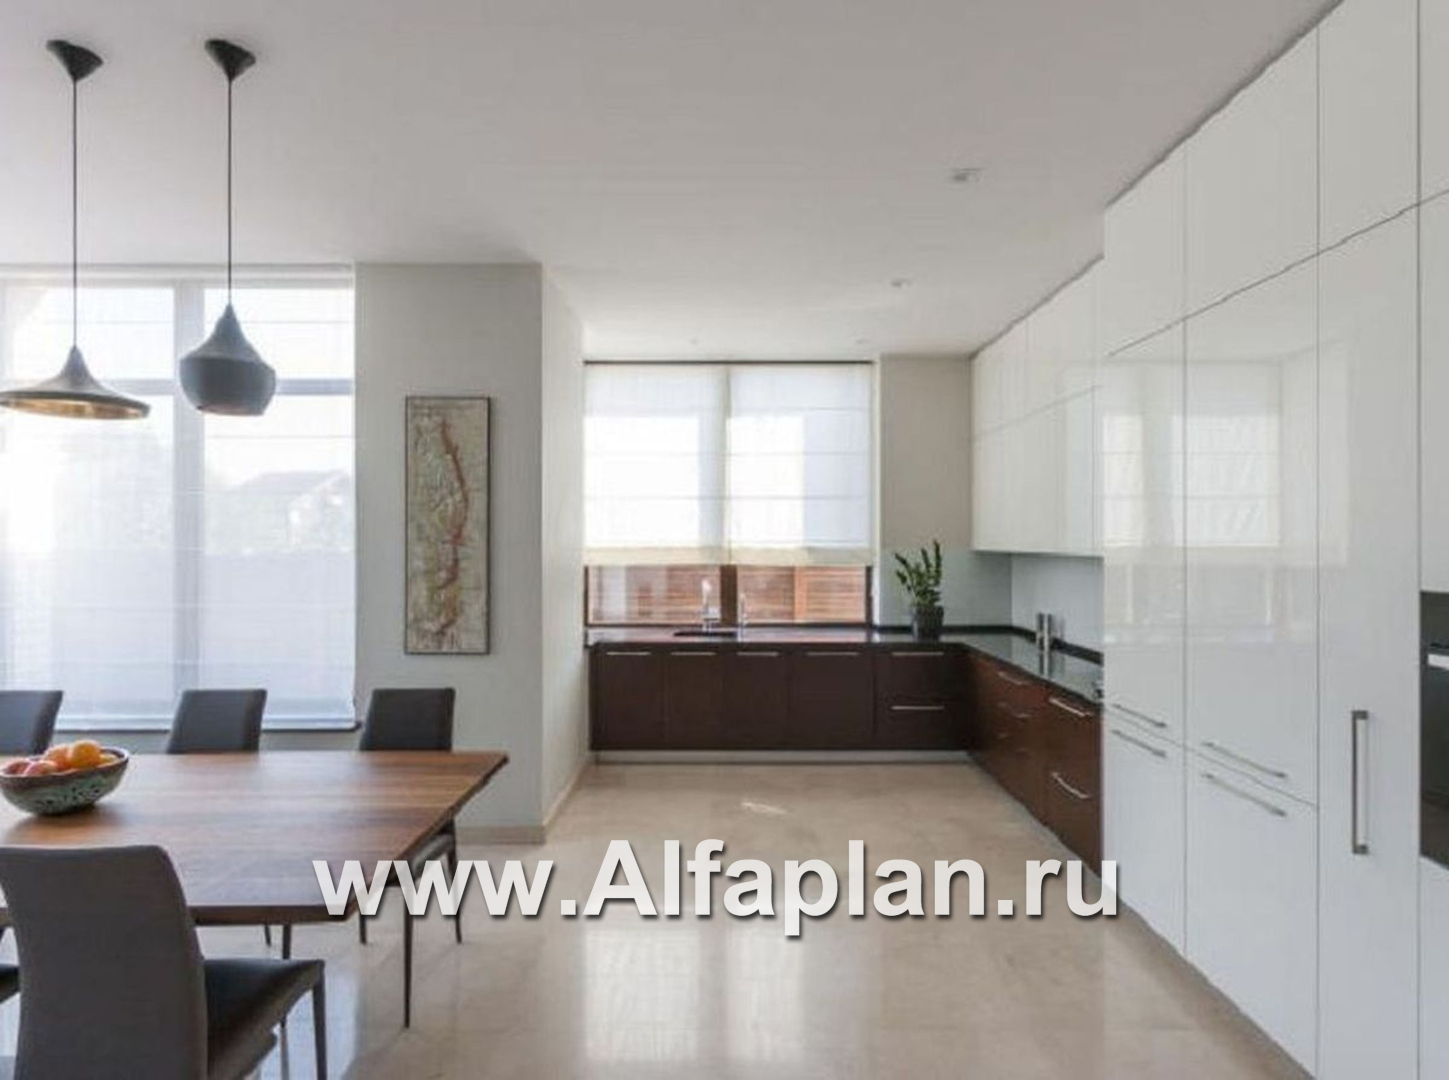 Проекты домов Альфаплан - «Современник» с панорамными окнами - дополнительное изображение №6